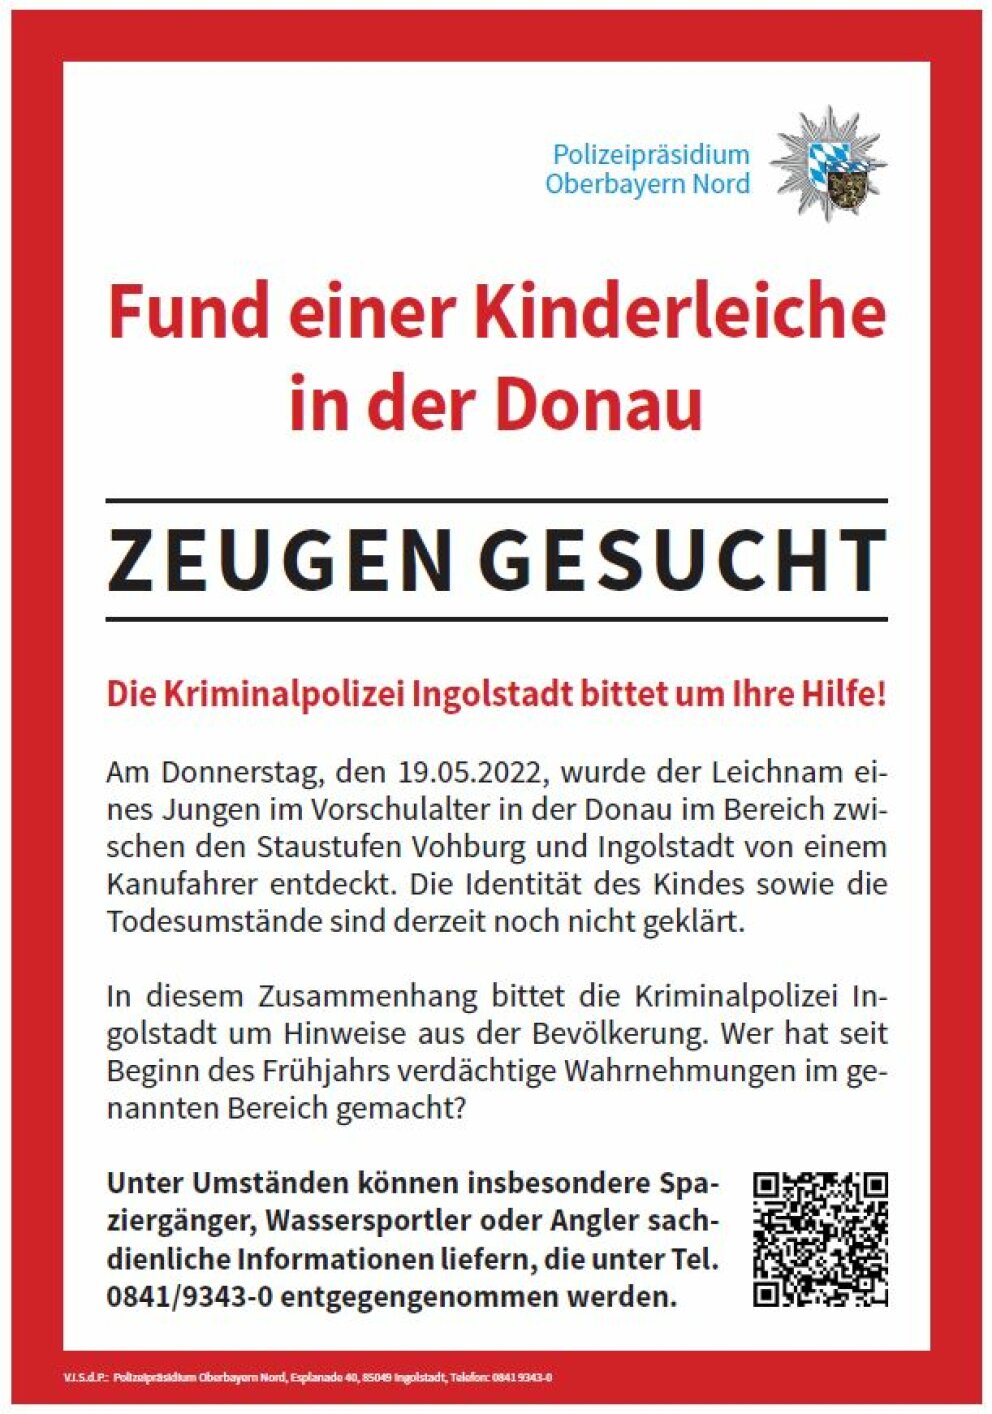 Die Bayerische Polizei - Fund einer Kinderleiche in der Donau -  Ermittlungen dauern an